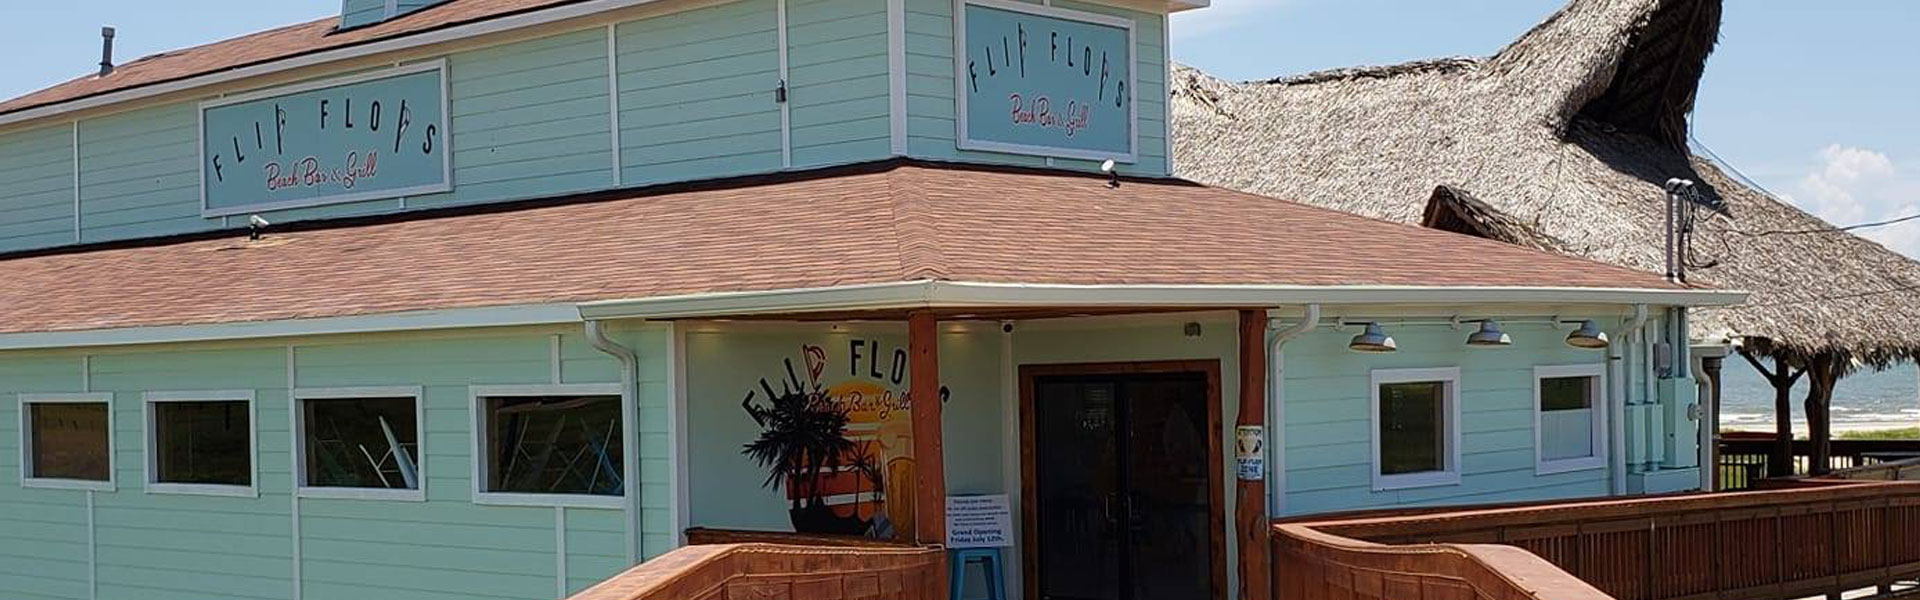 Exterior View of Flip Flops Beach Bar & Grill, Galveston, TX